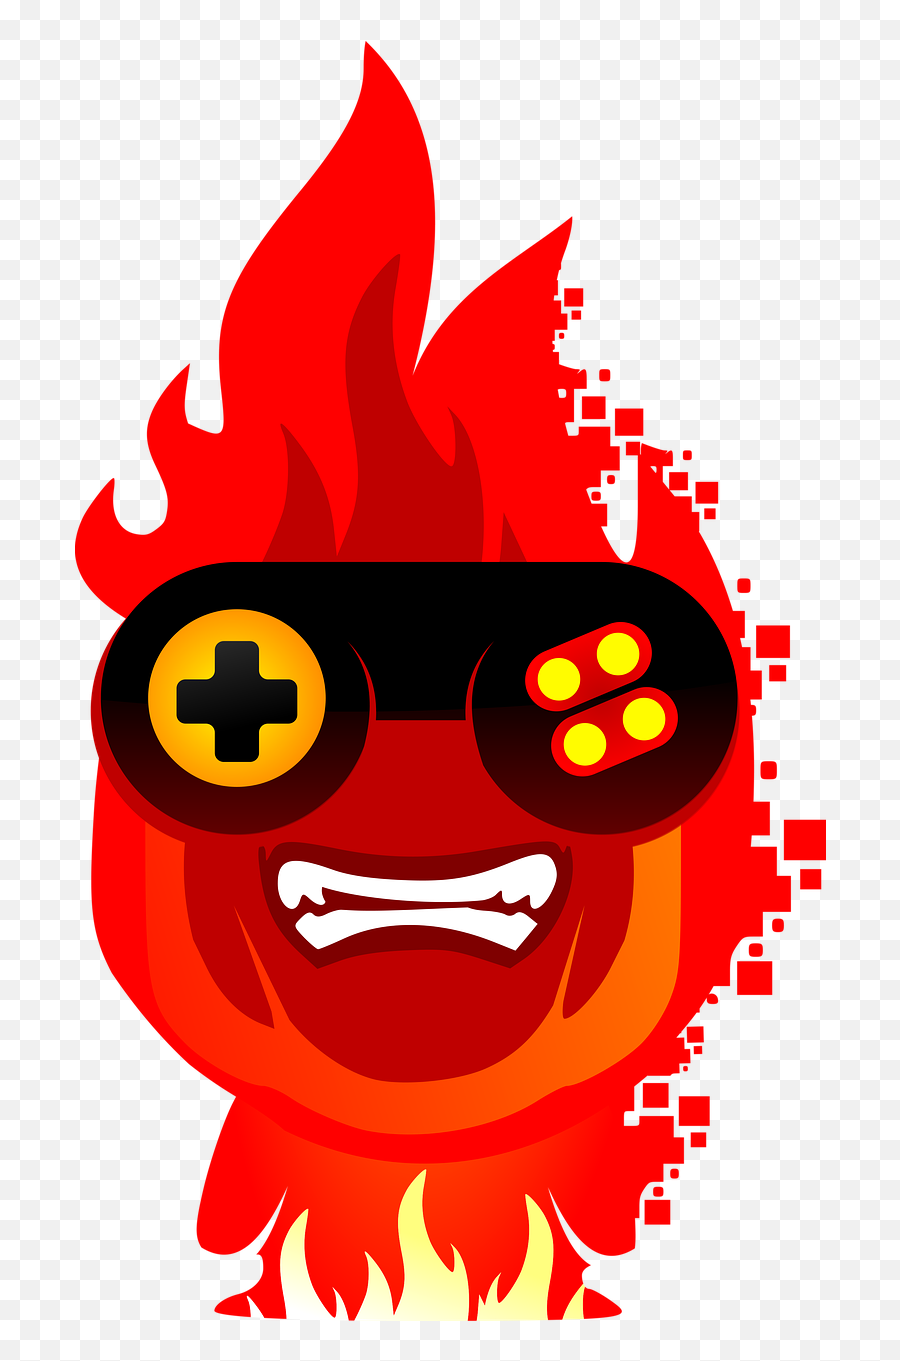 Logo Addict Video - Imagenes Png De Juegos Emoji,Movie Projector Emoticon